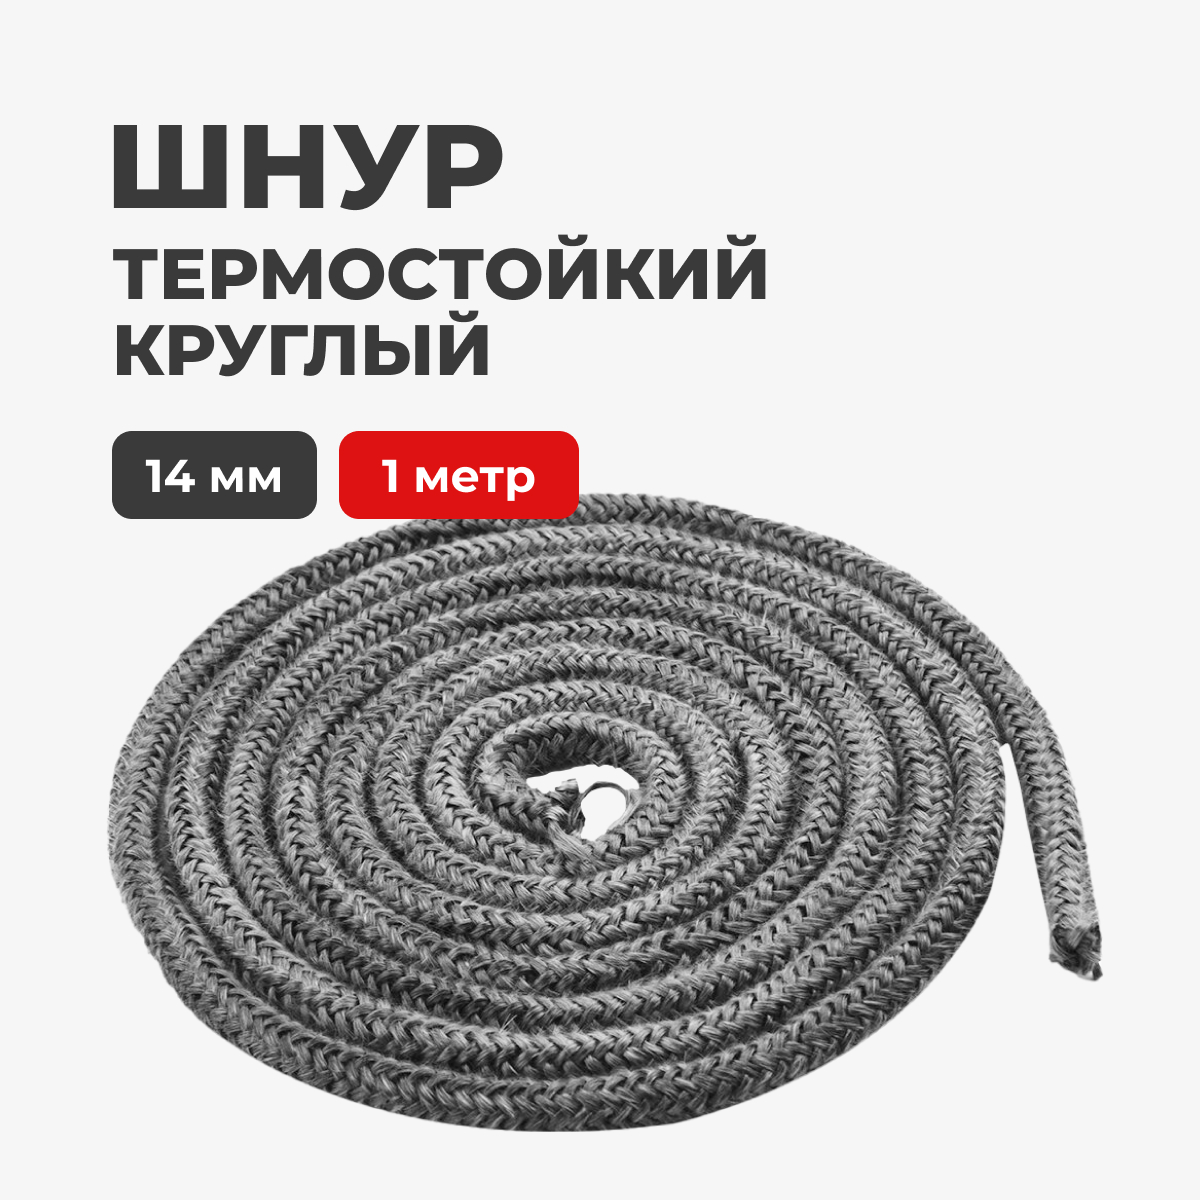 Шнур термостойкий для печей и каминов R-SAUNA круглый 14 мм. 1 метр, 27082 патрон декоративный шнур 1 метр e27 чёрный жемчуг